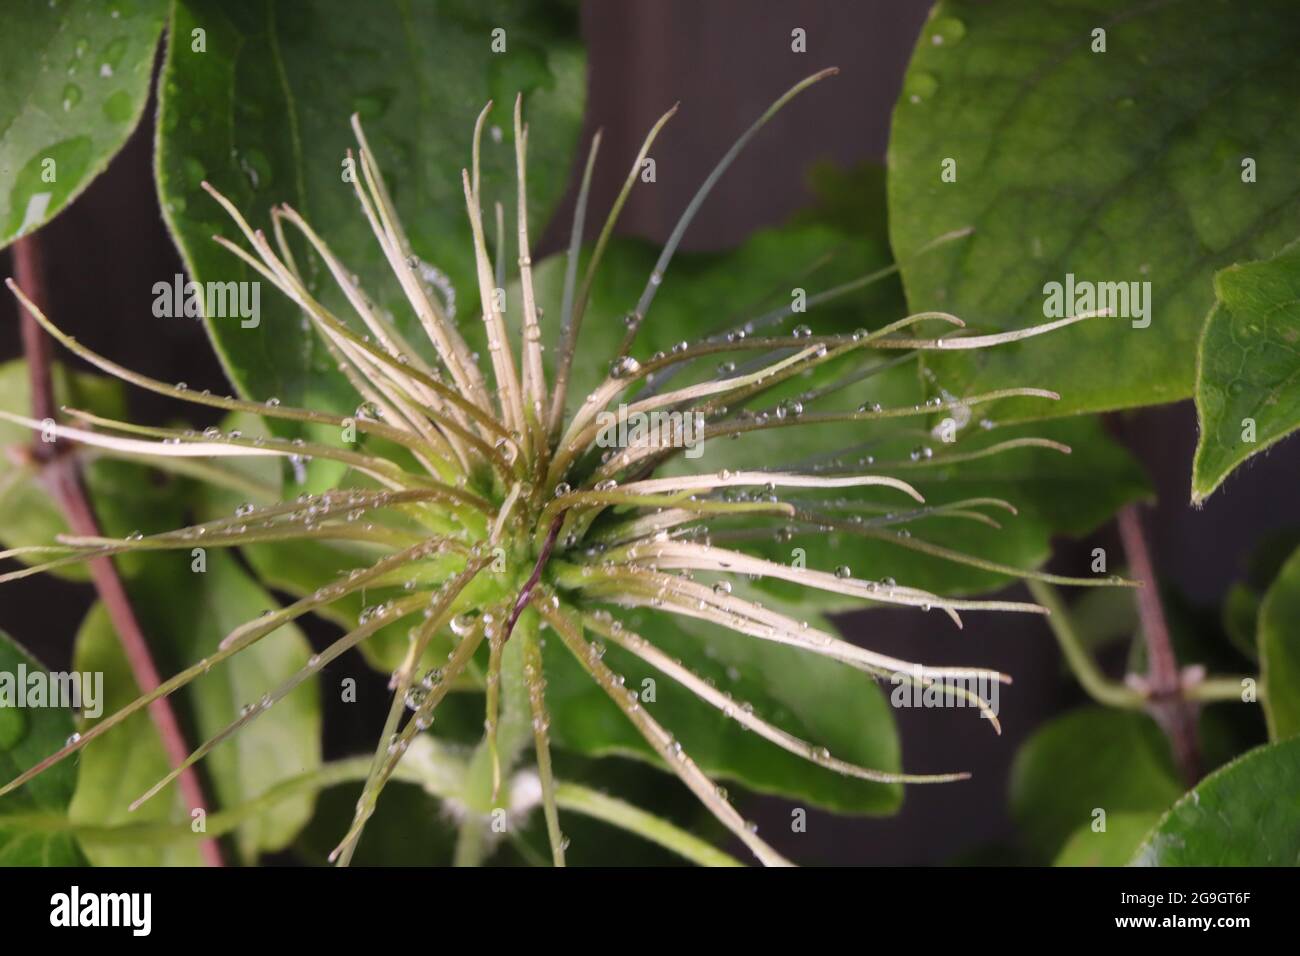 Die Makro-Aufnahme zeigt beeindruckende Details der Clematis-Blüte (klematis, Waldrebe) Foto Stock